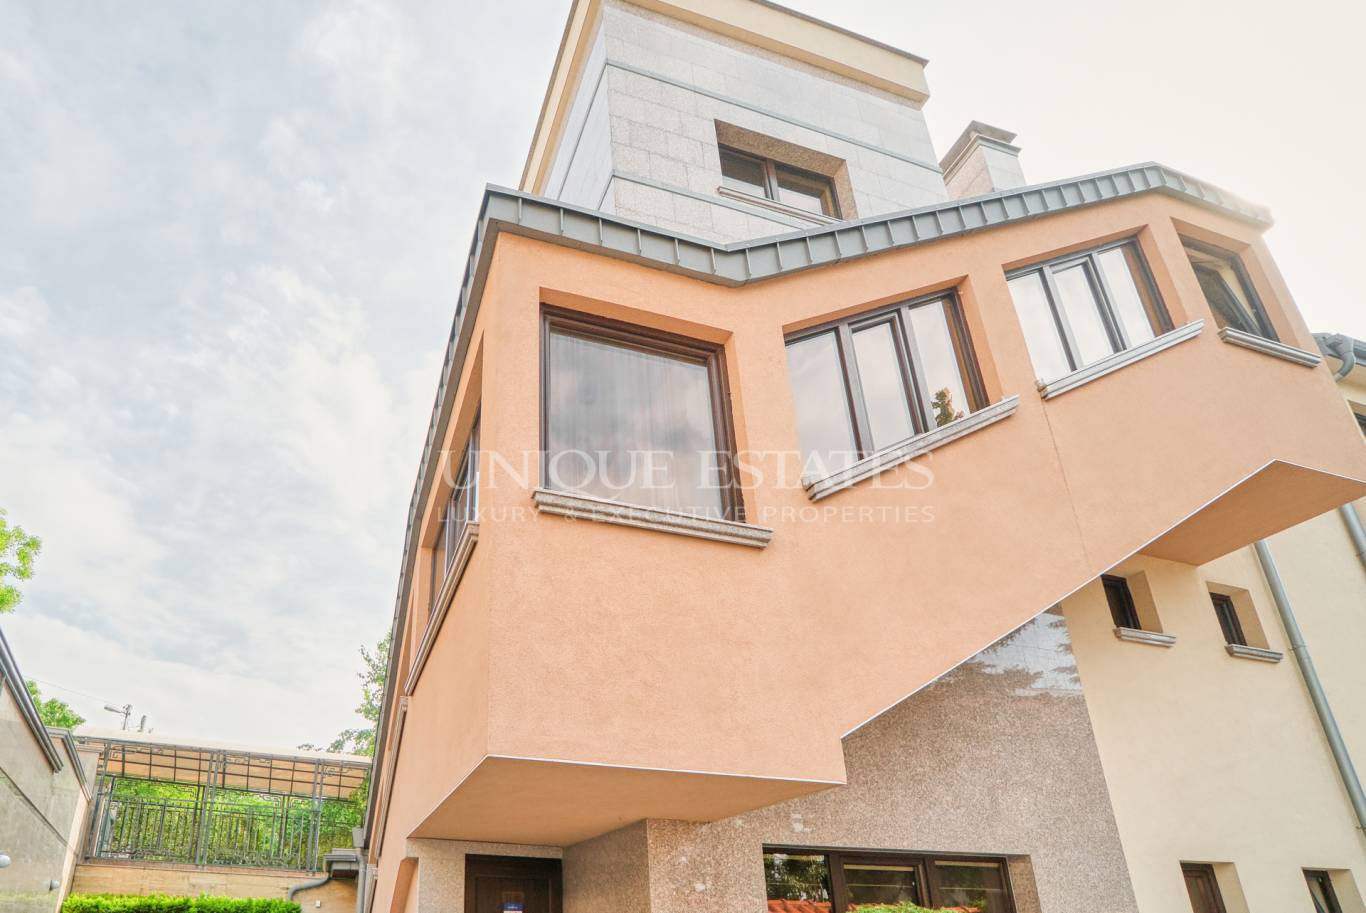 Апартамент под наем в София, Симеоново - код на имота: K20253 - image 10